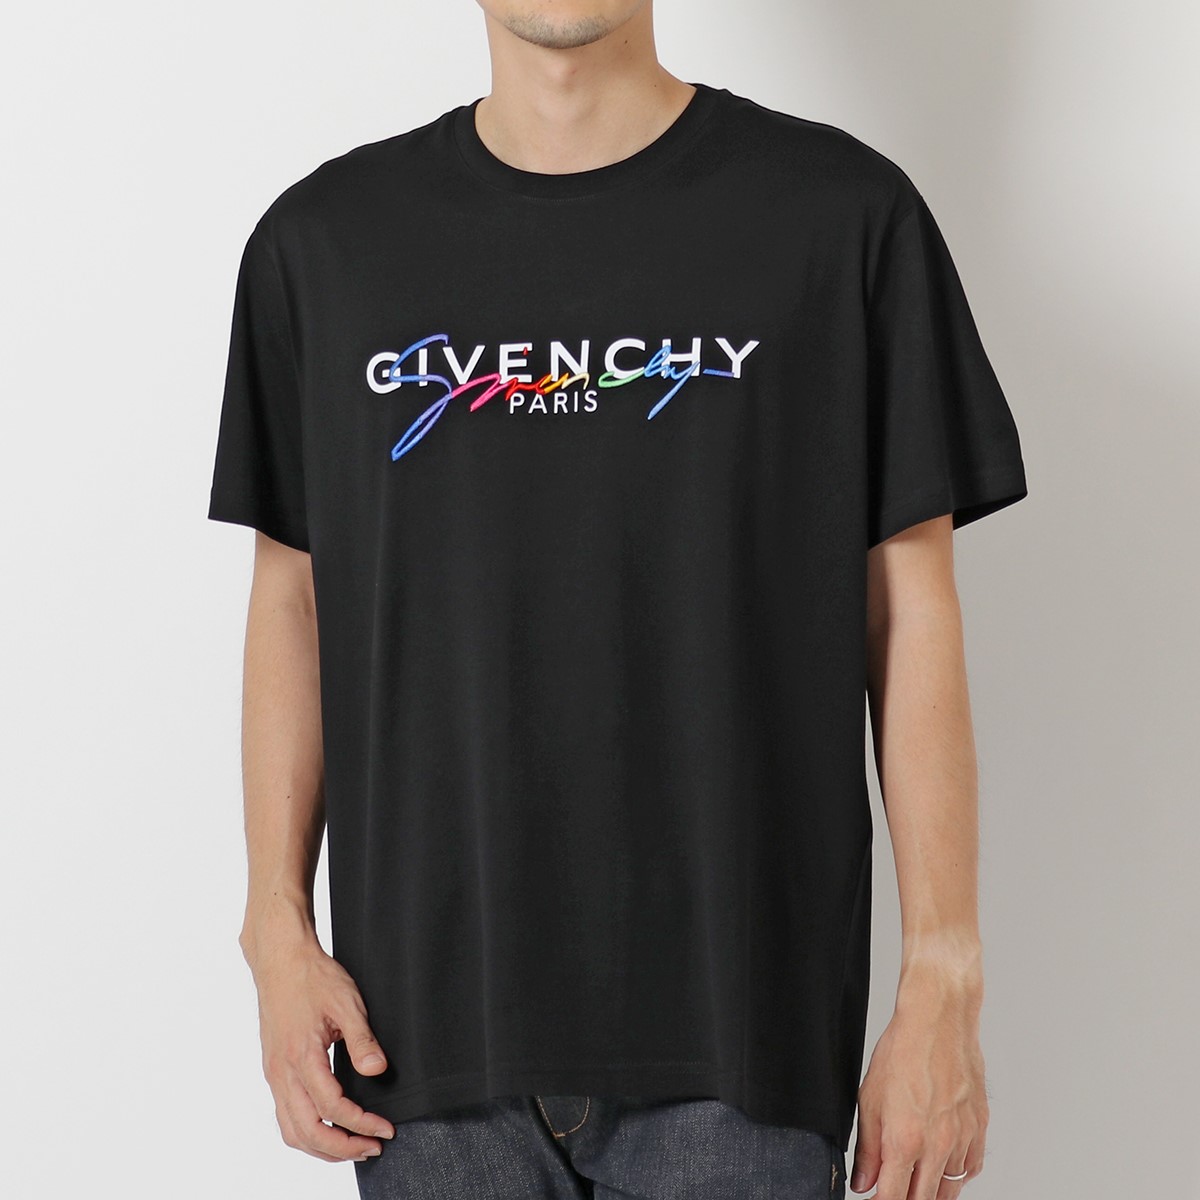 ジバンシィ カットソー クロエ Givenchy クルーネック シグニチャー刺繍 ロゴt 半袖tシャツ シャネル Bm70rl3002 コットン 001 Black メンズ